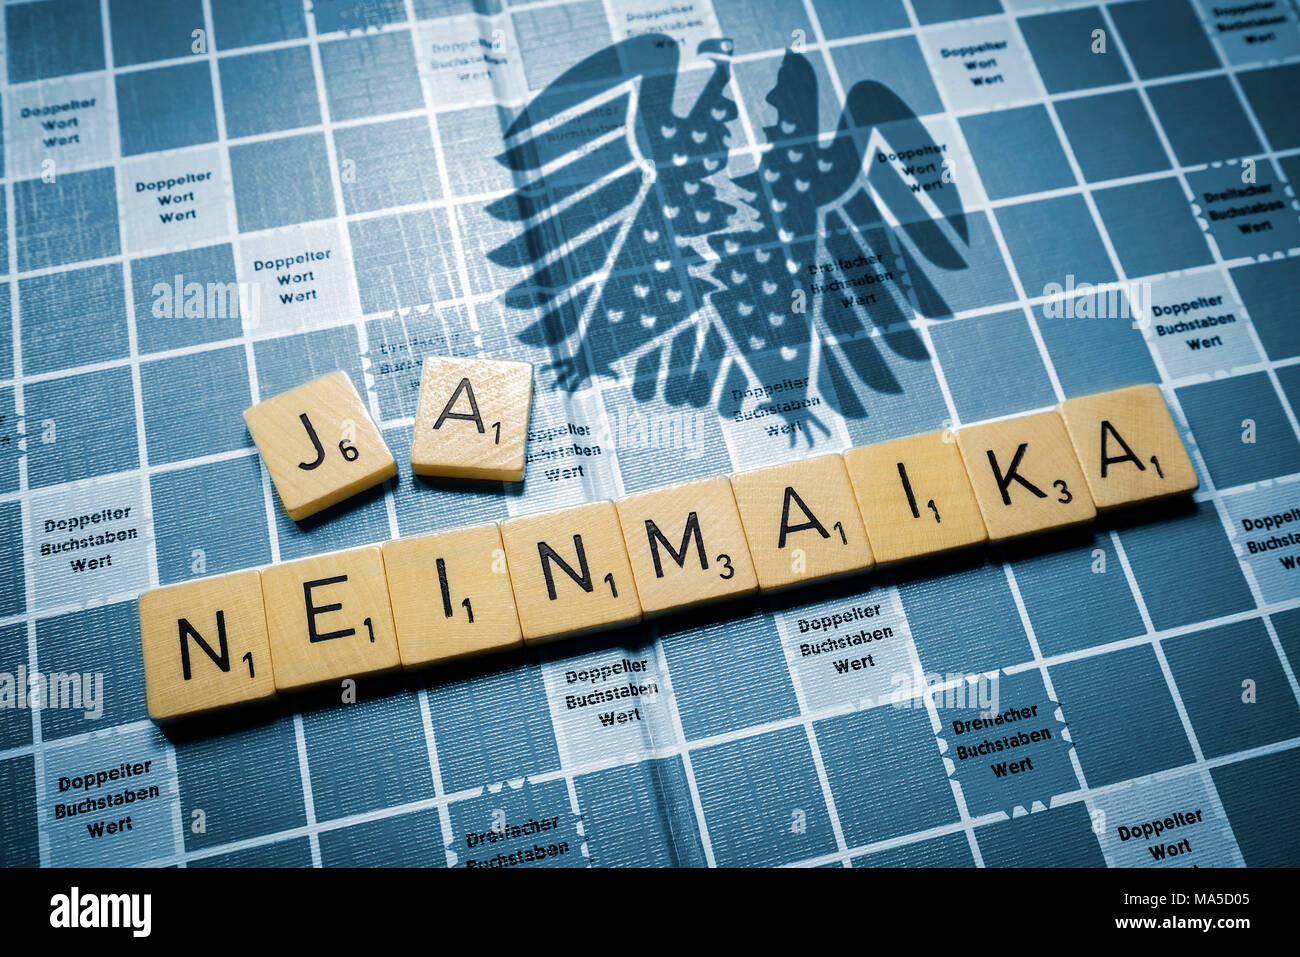 Buchstaben, Wort "Neinmaika", Ausfall der jamaikanischen Gespräche Stockfoto